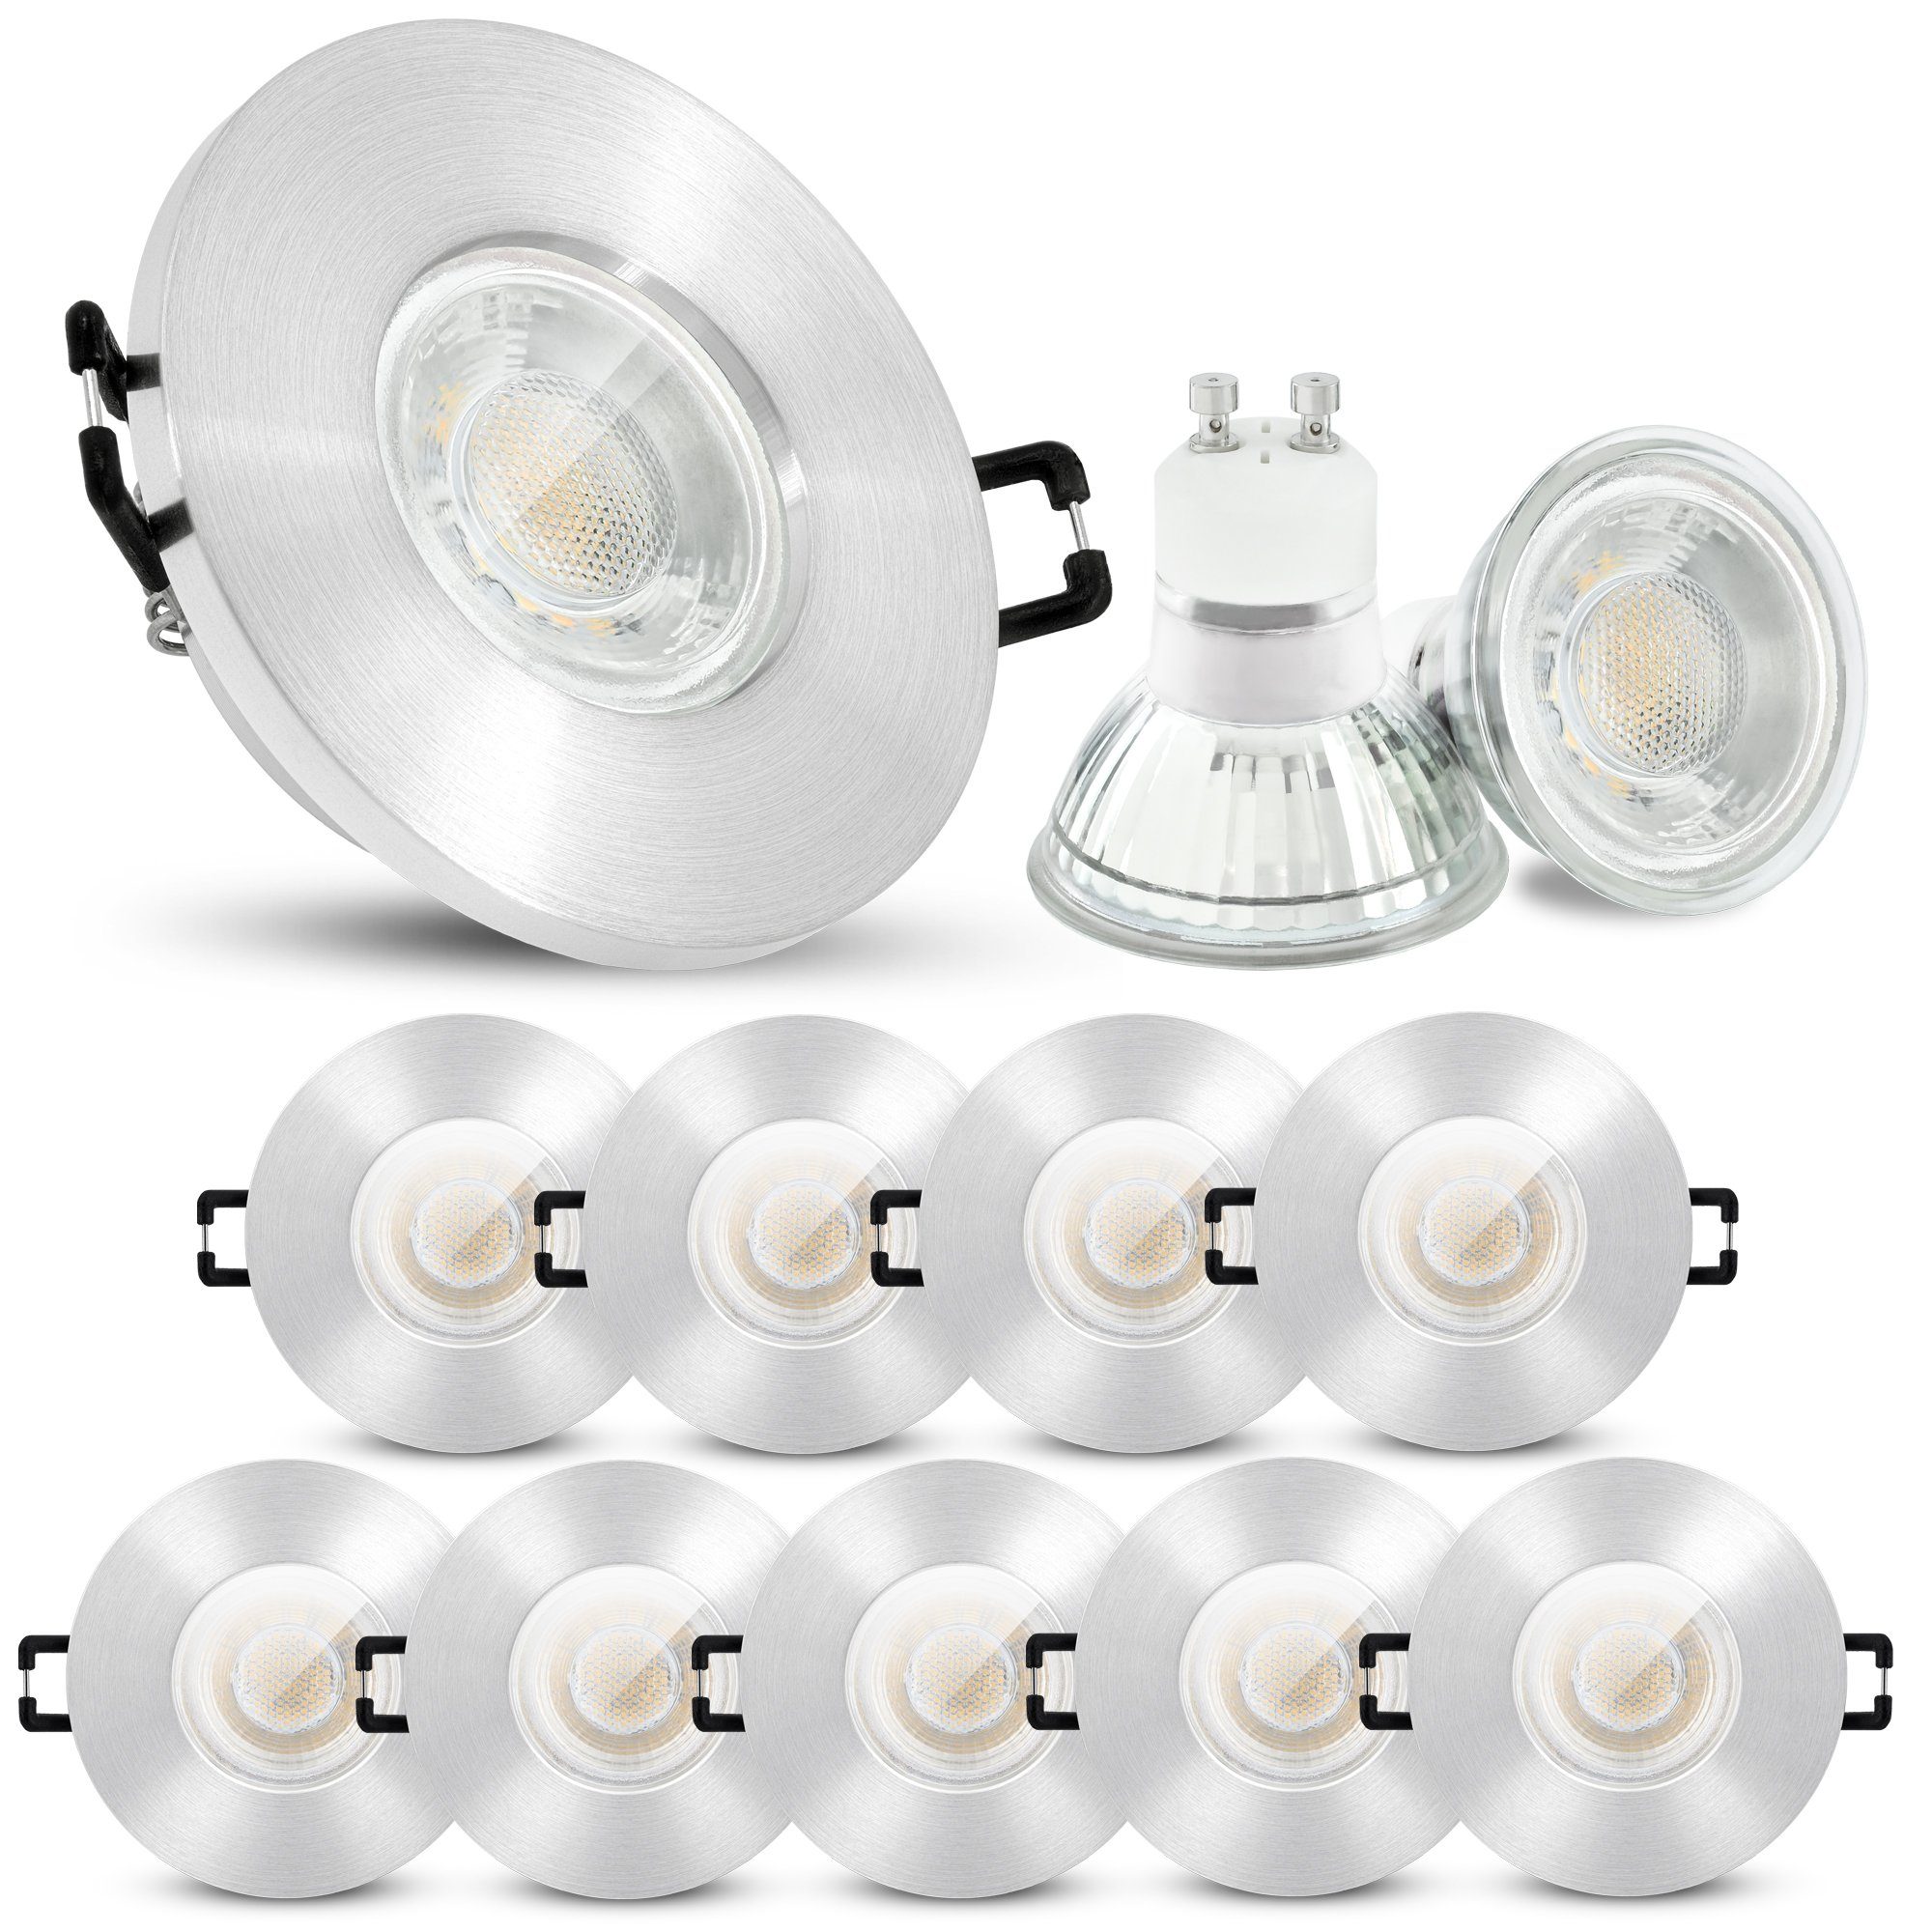 unvergesslich linovum LED Einbaustrahler 6W Leuchtmittel inklusive, Einbauleuchten Leuchtmittel 10er Set IP65 inklusive 230V, GU10 LED warmweiss